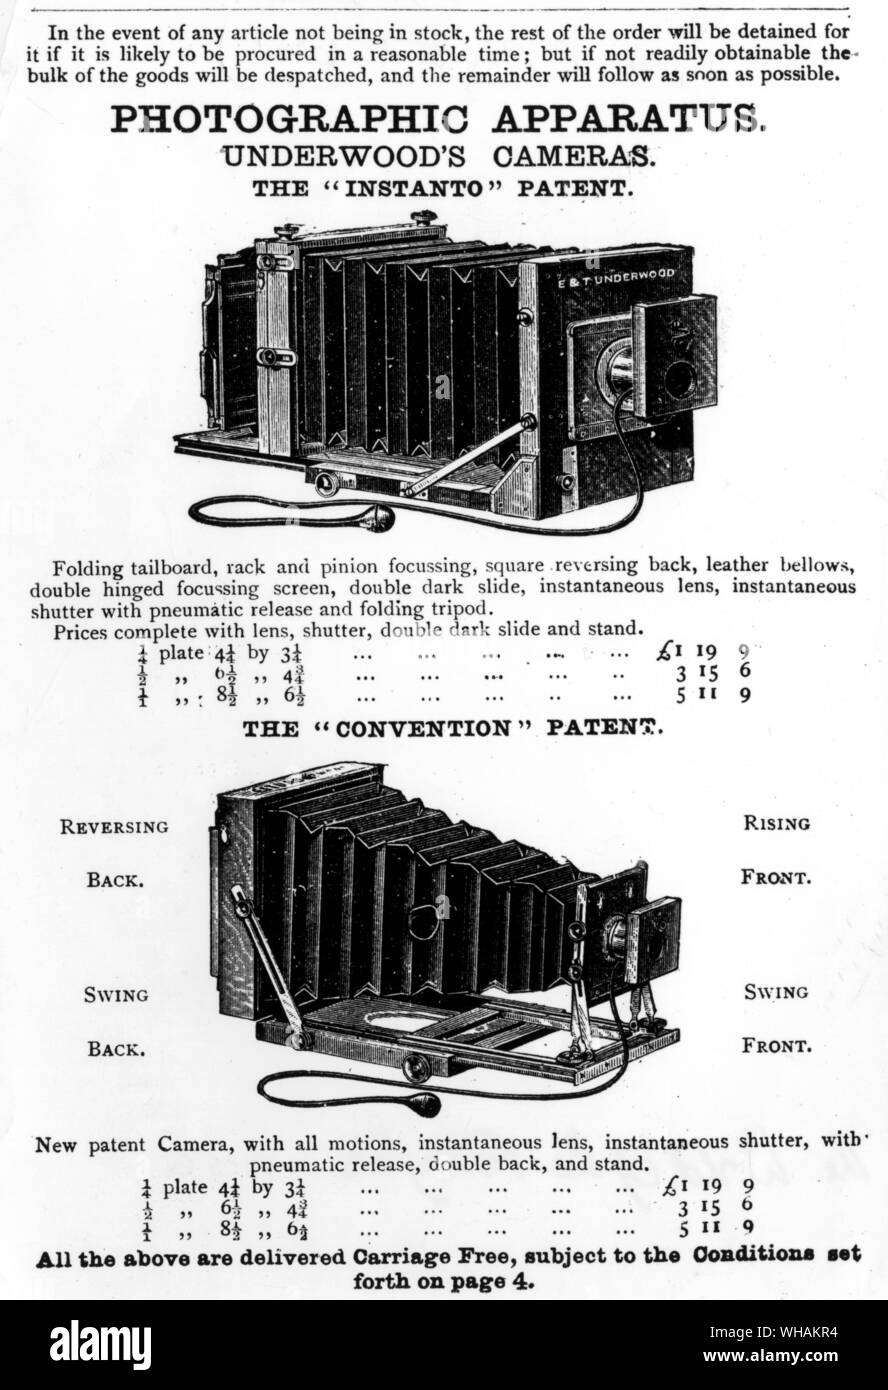 Almacenes Harrod's 1895. Aparatos fotográficos Foto de stock